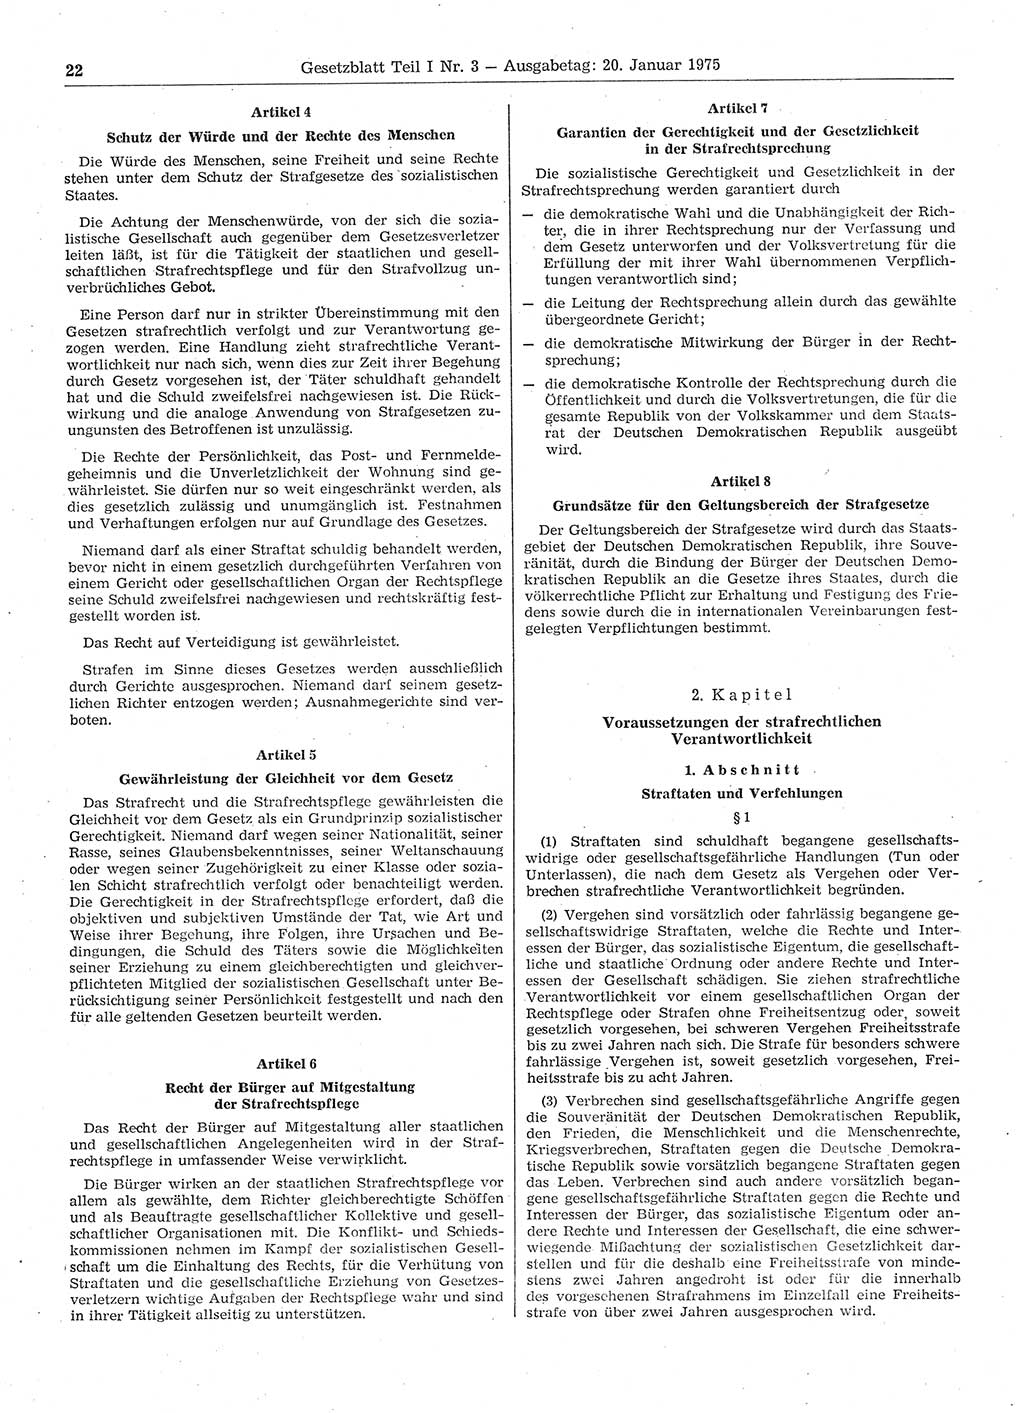 Gesetzblatt (GBl.) der Deutschen Demokratischen Republik (DDR) Teil Ⅰ 1975, Seite 22 (GBl. DDR Ⅰ 1975, S. 22)